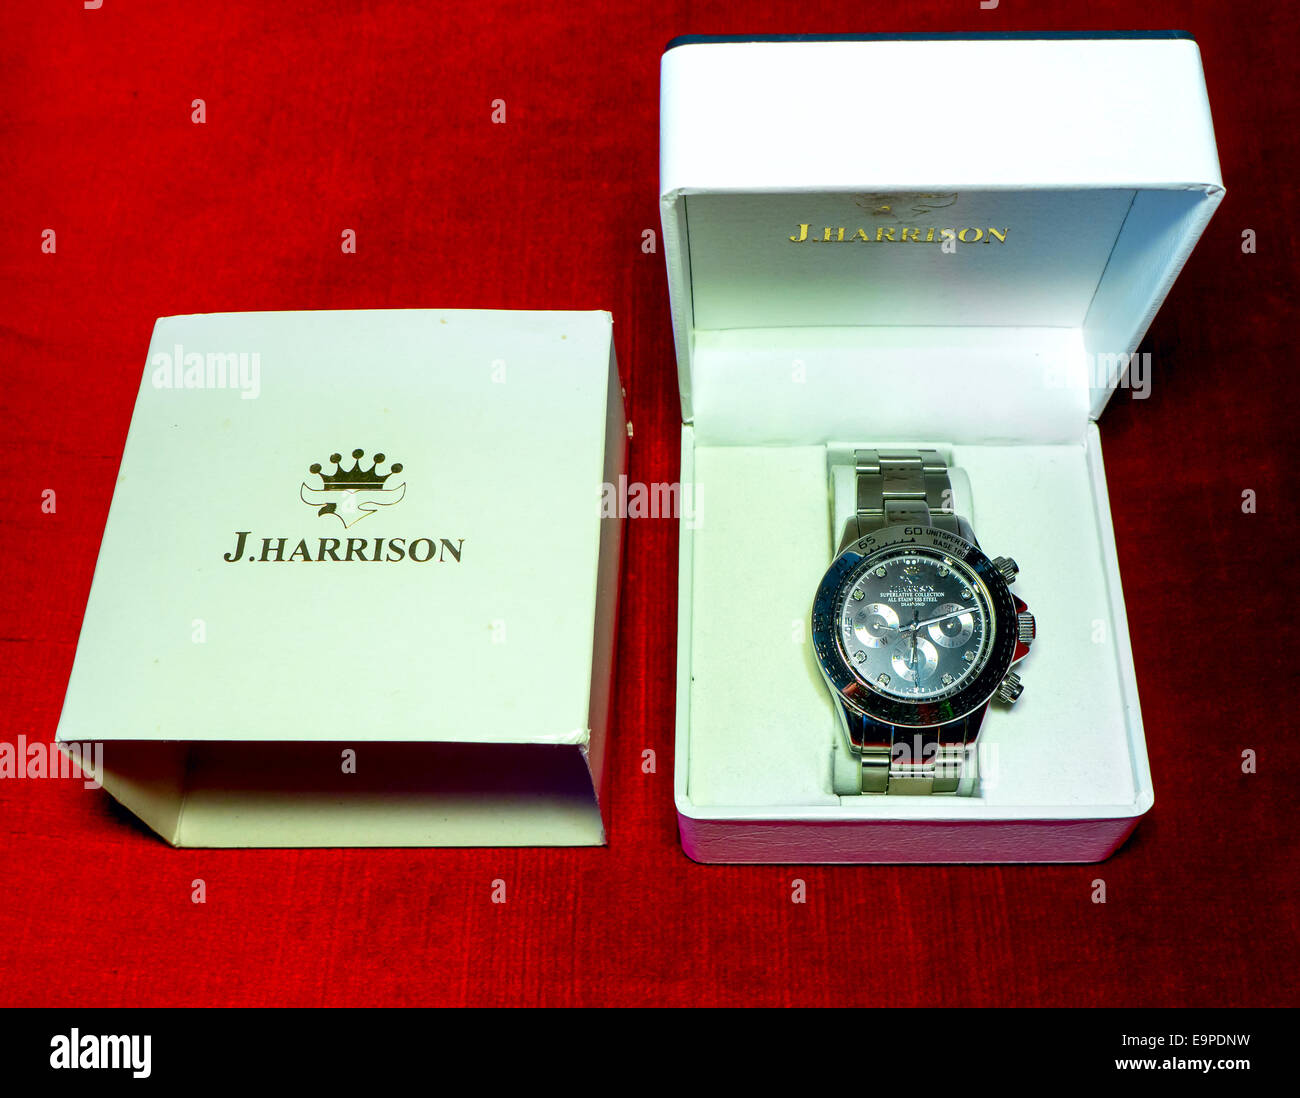 GOMEL, Bielorussia - Agosto 31, 2014: J. HARRISON J.H-014DS orologio da polso. J. HARRISON questo giapponese watch company. Foto Stock